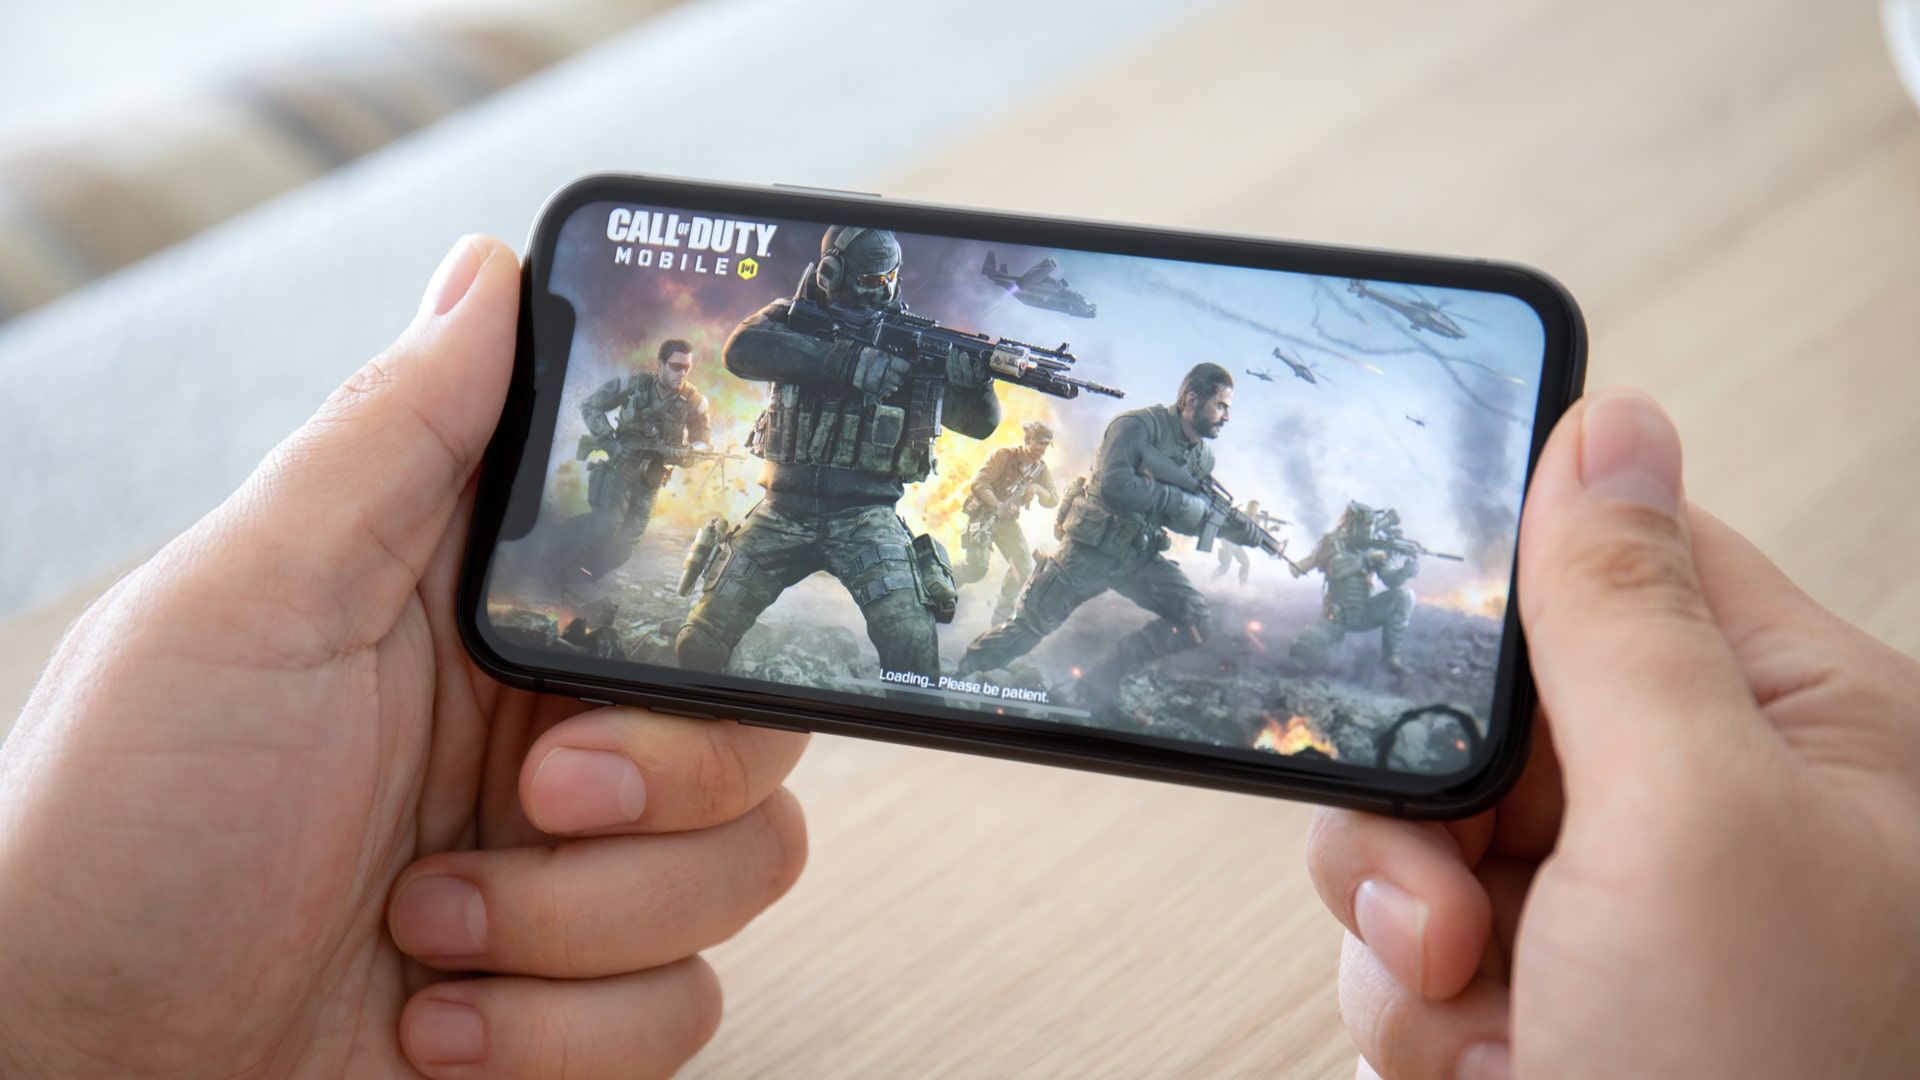 Melhores jogos para Android: confira as opções para jogar em 2021